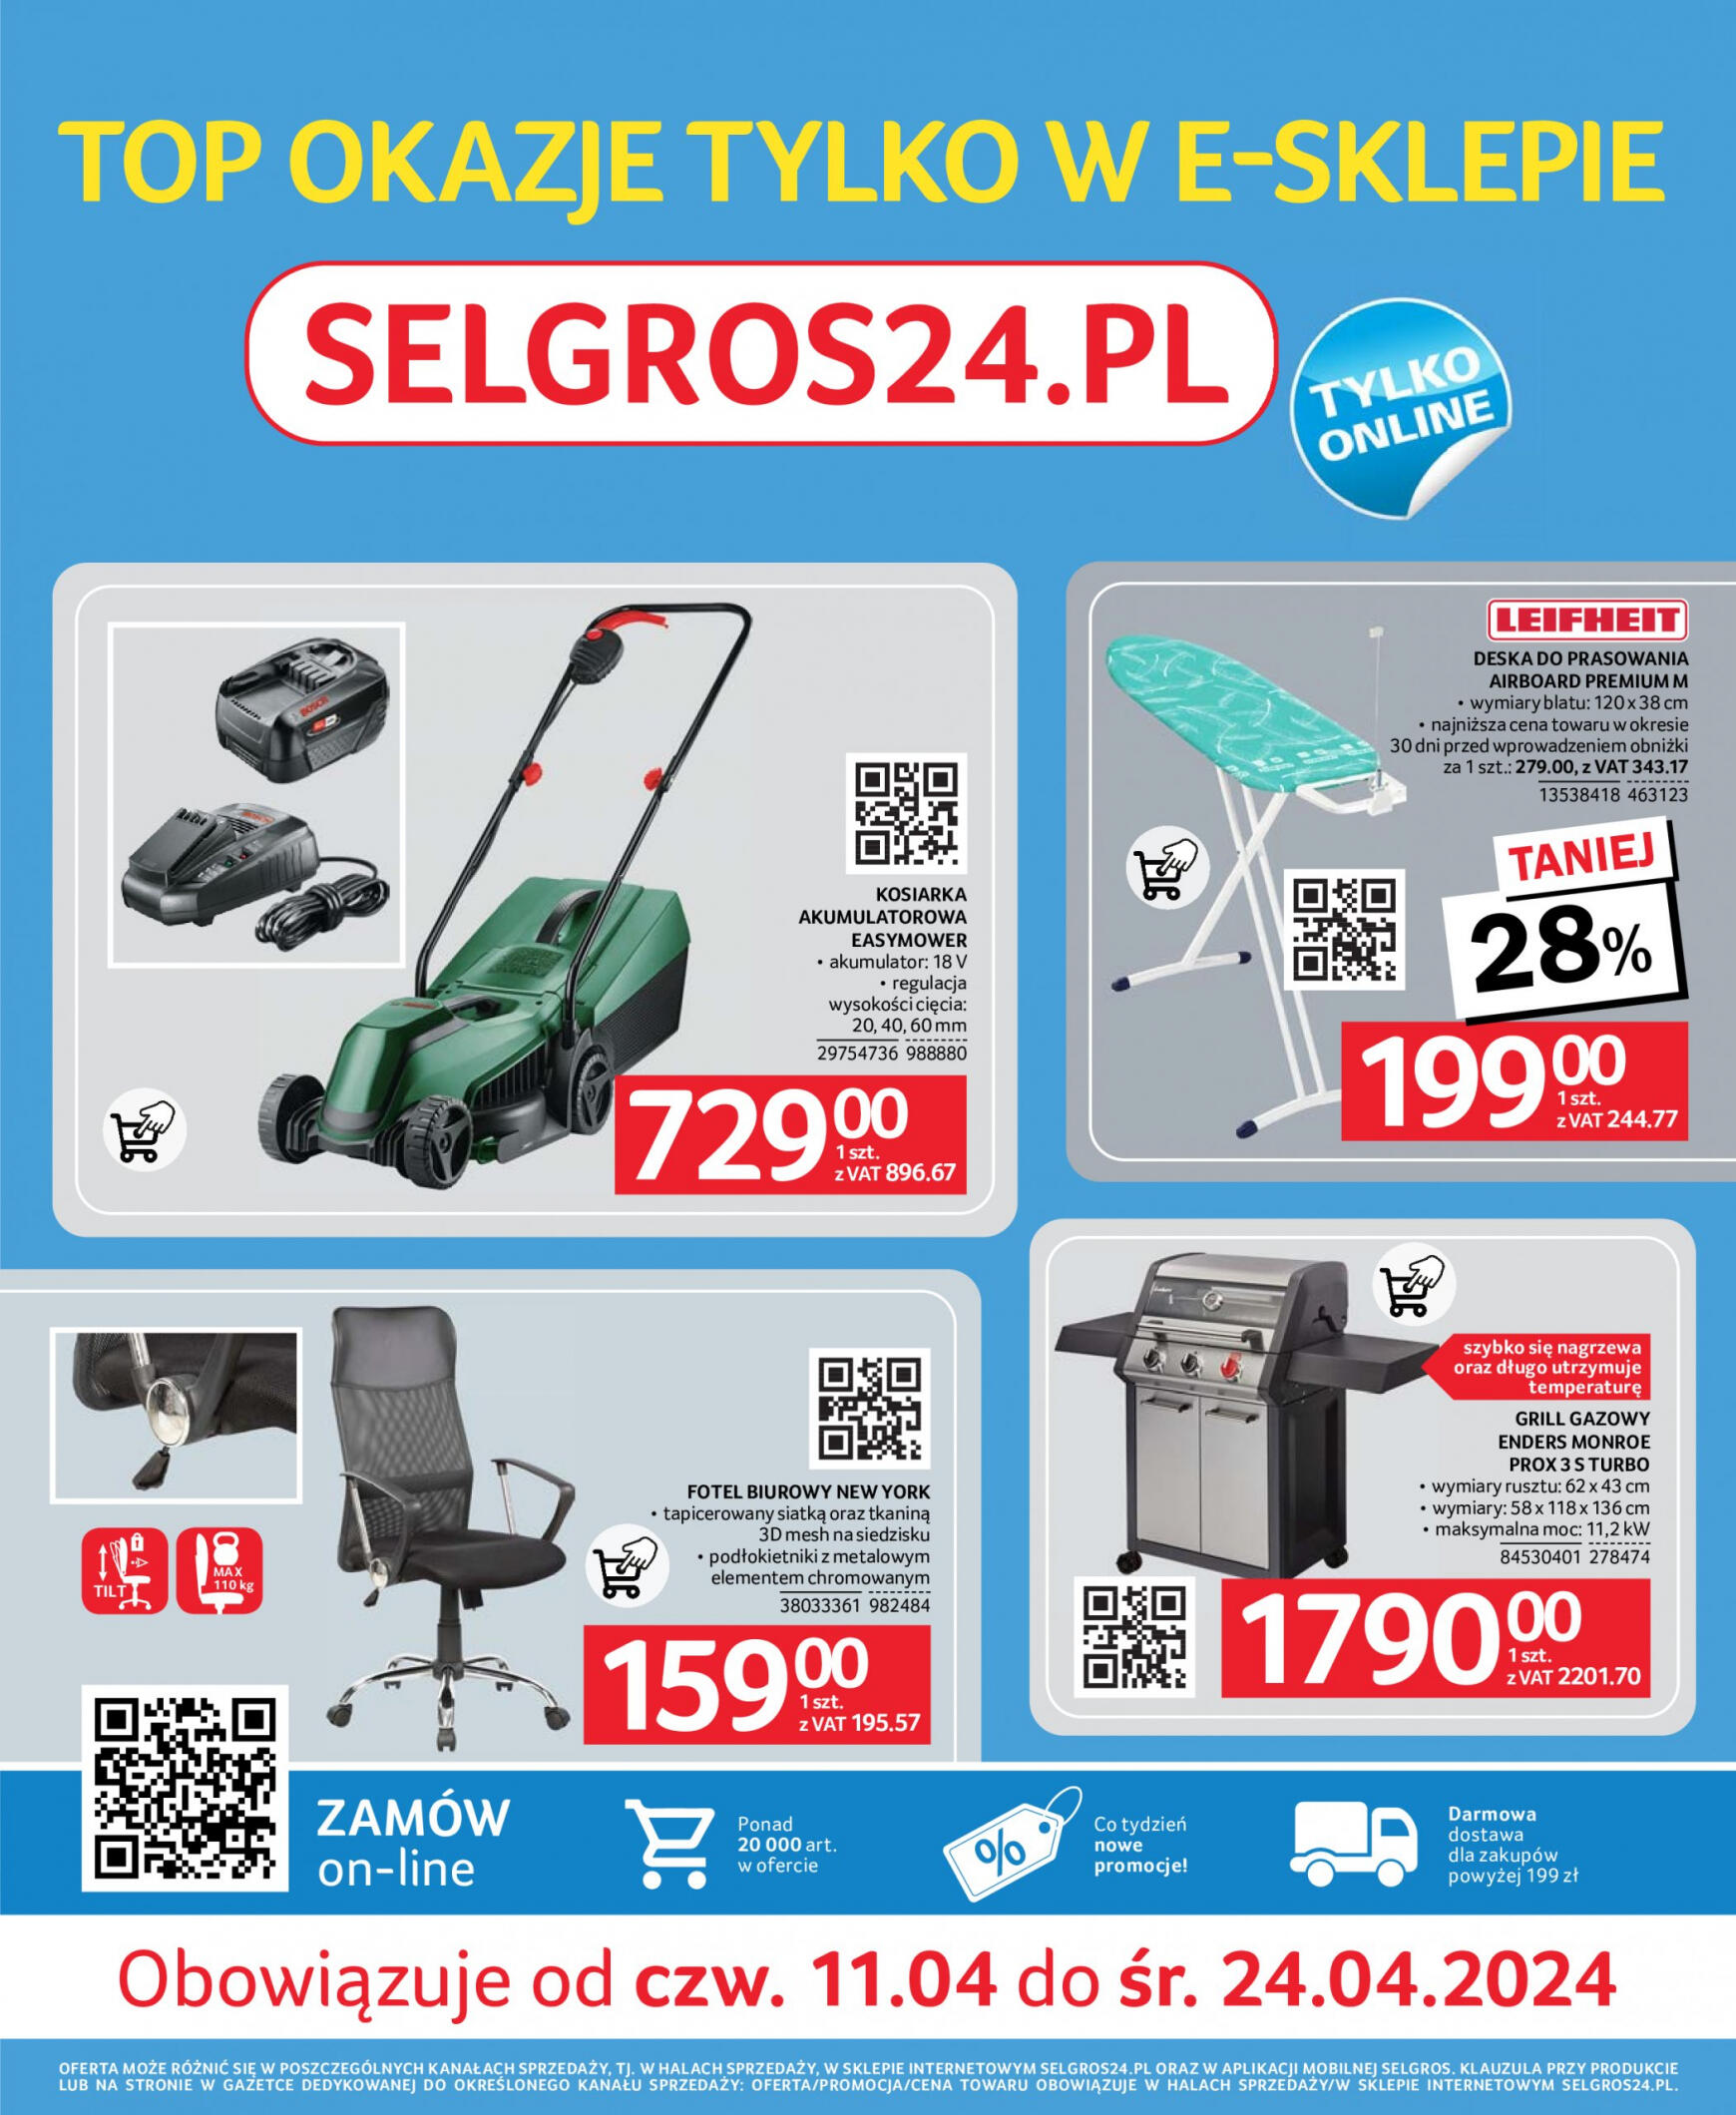 selgros - Selgros cash&carry - E-sklep gazetka aktualna ważna od 11.04. - 24.04. - page: 1